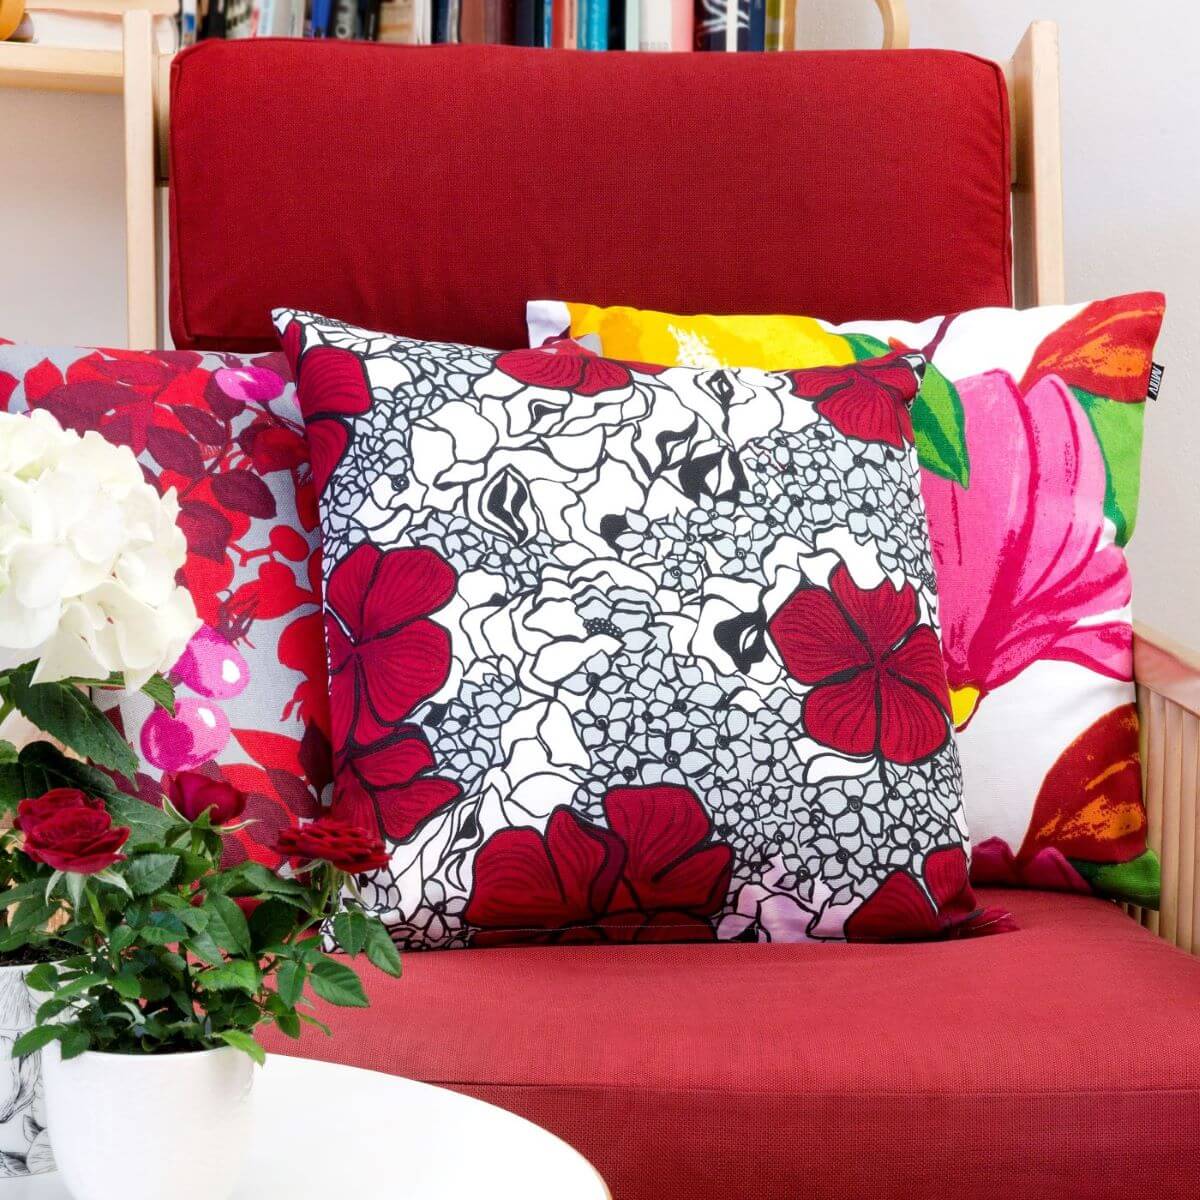 Poduszka dekoracyjna czerwone kwiaty ELLE. Leżąca na czerwonym fotelu poduszka z bawełny w czerwone i drobne szare kwiaty. Obok niej inne poduszki dekoracyjne w kwiaty. Skandynawski design